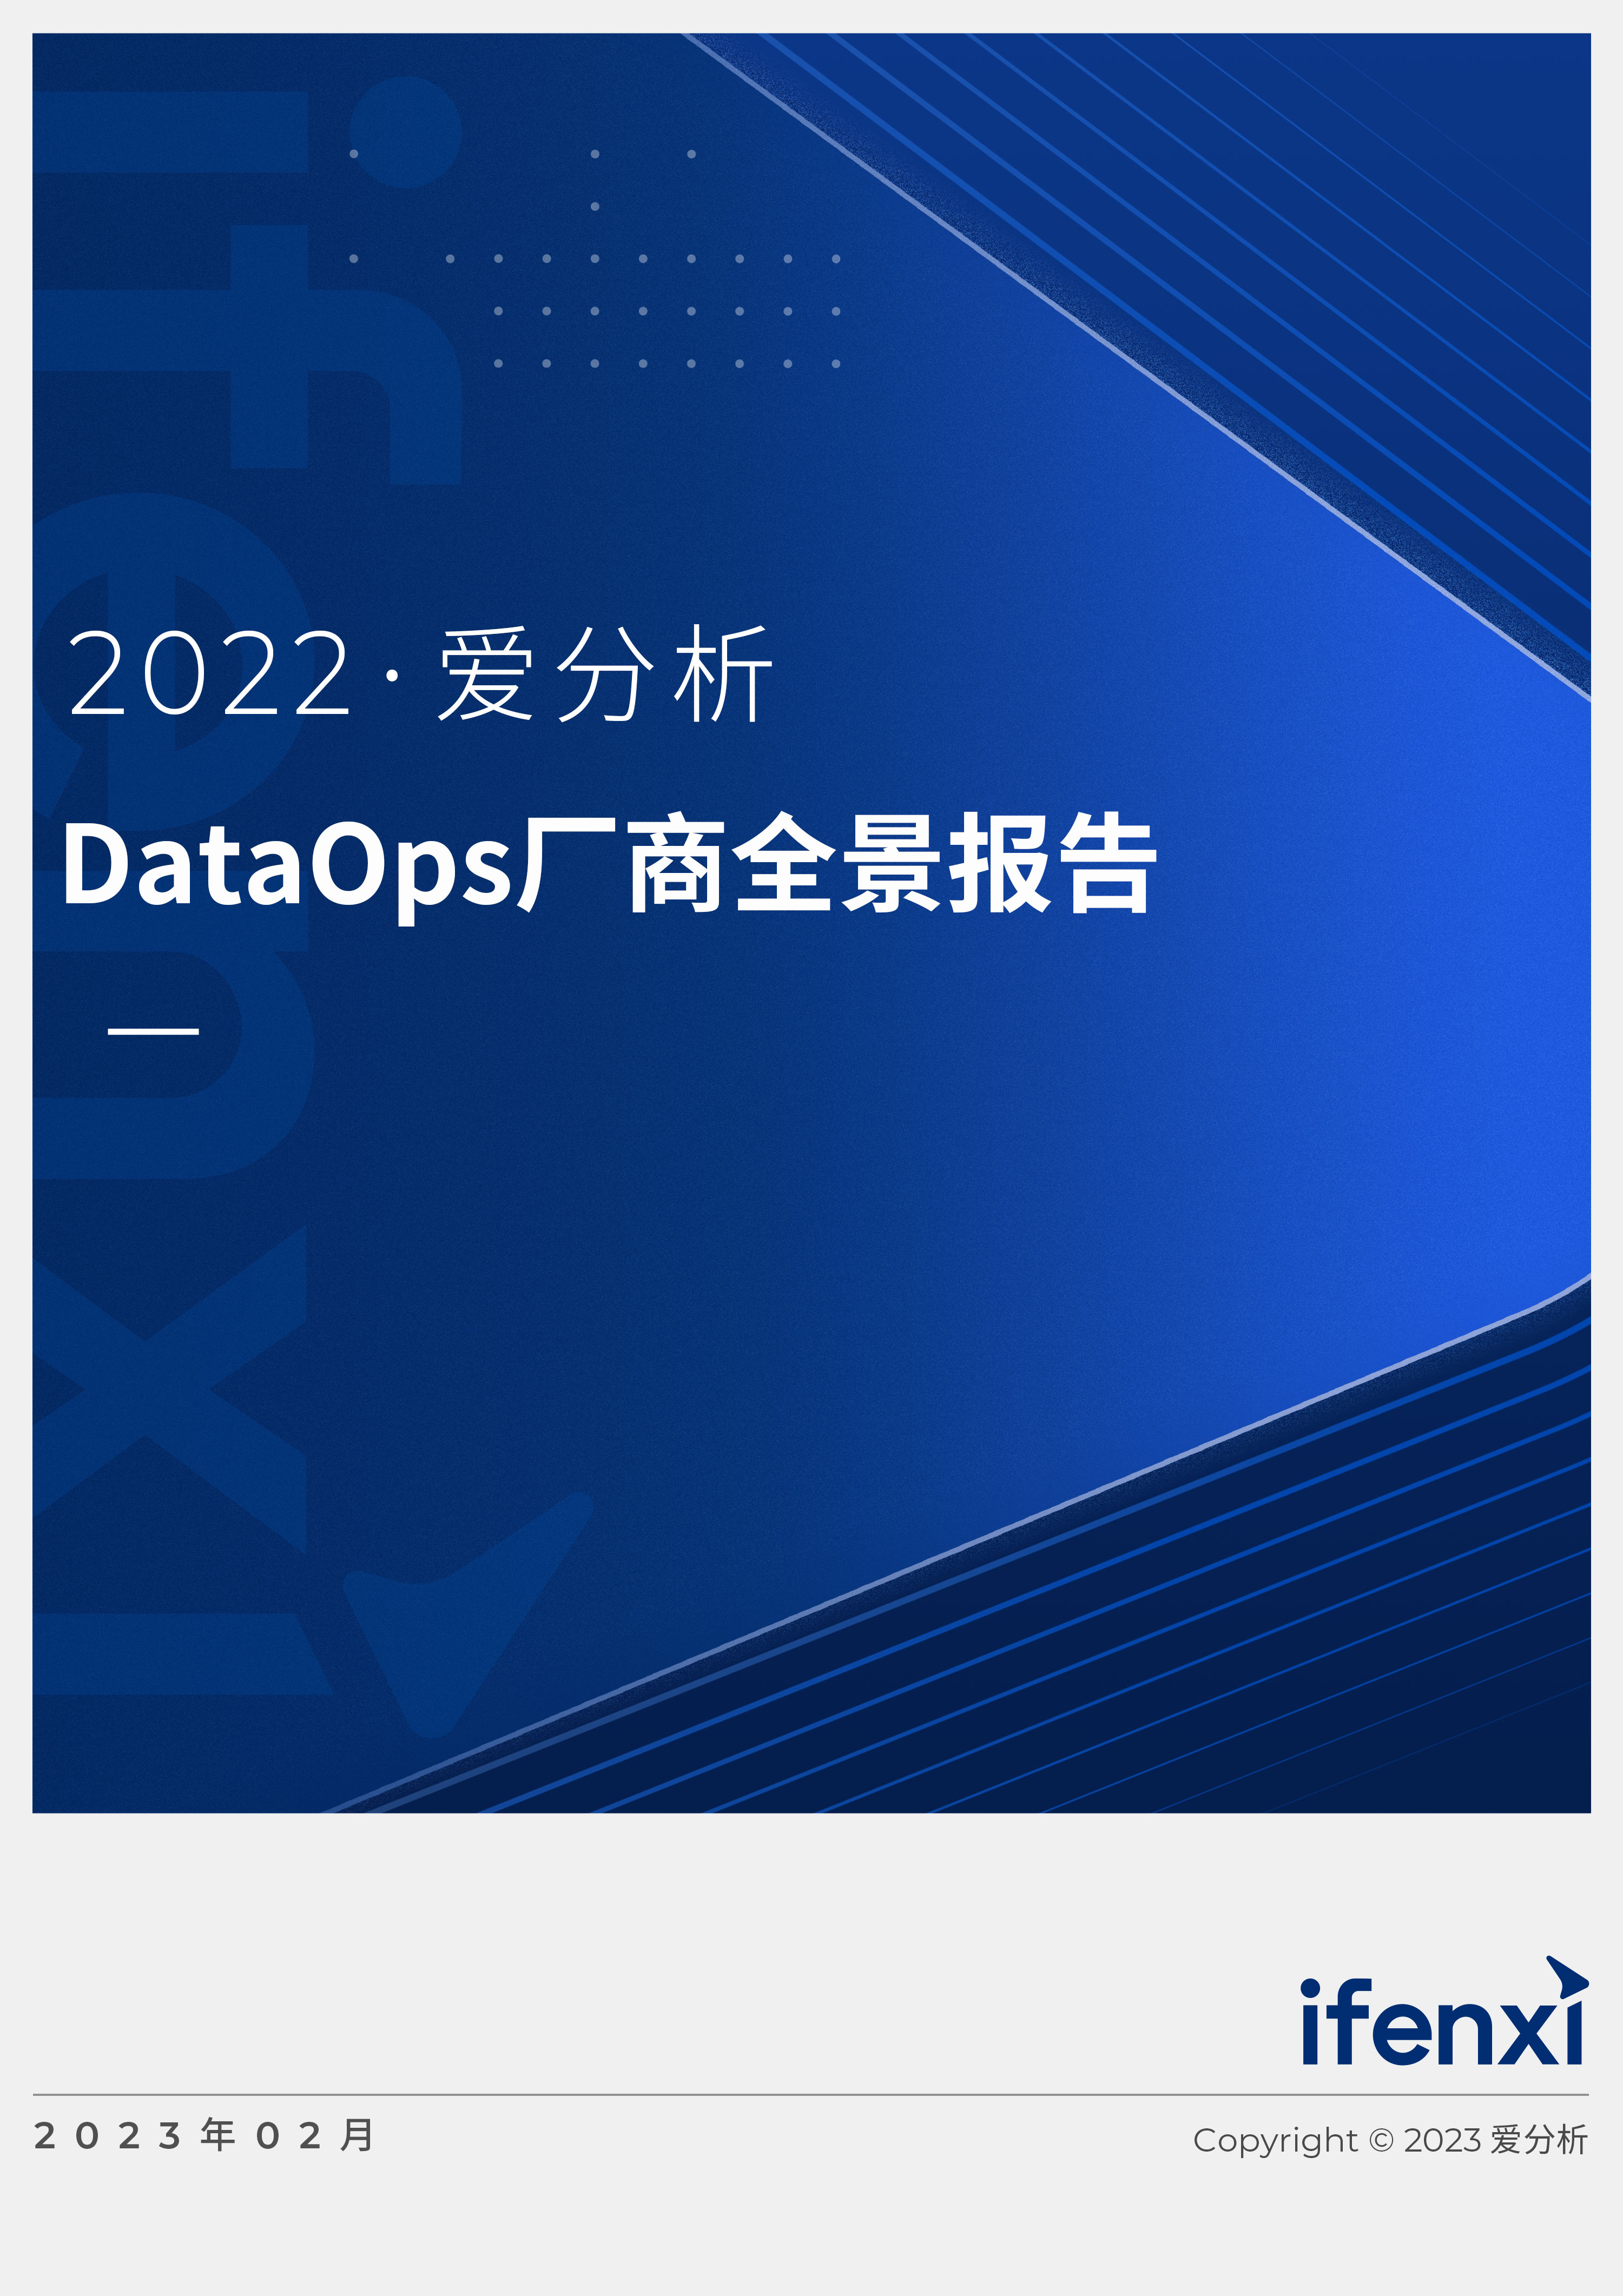 2022愛分析 · DataOps廠商全景報告 | 愛分析報告